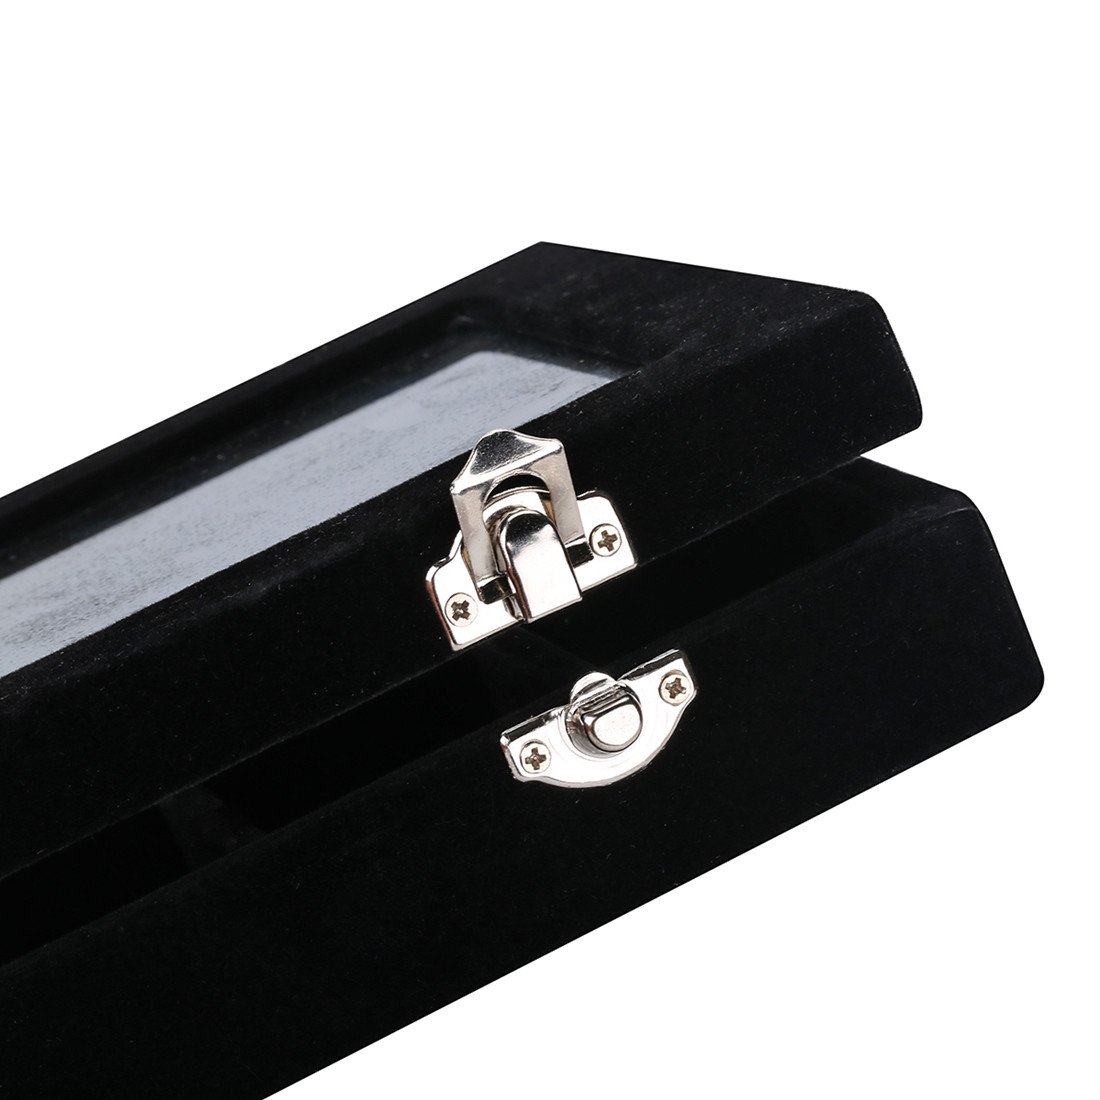 Ivosmart 24 Section Velvet Glass Jewelry Ring Display Organiser Box Tray Holder Earrings Storage Case (Black)